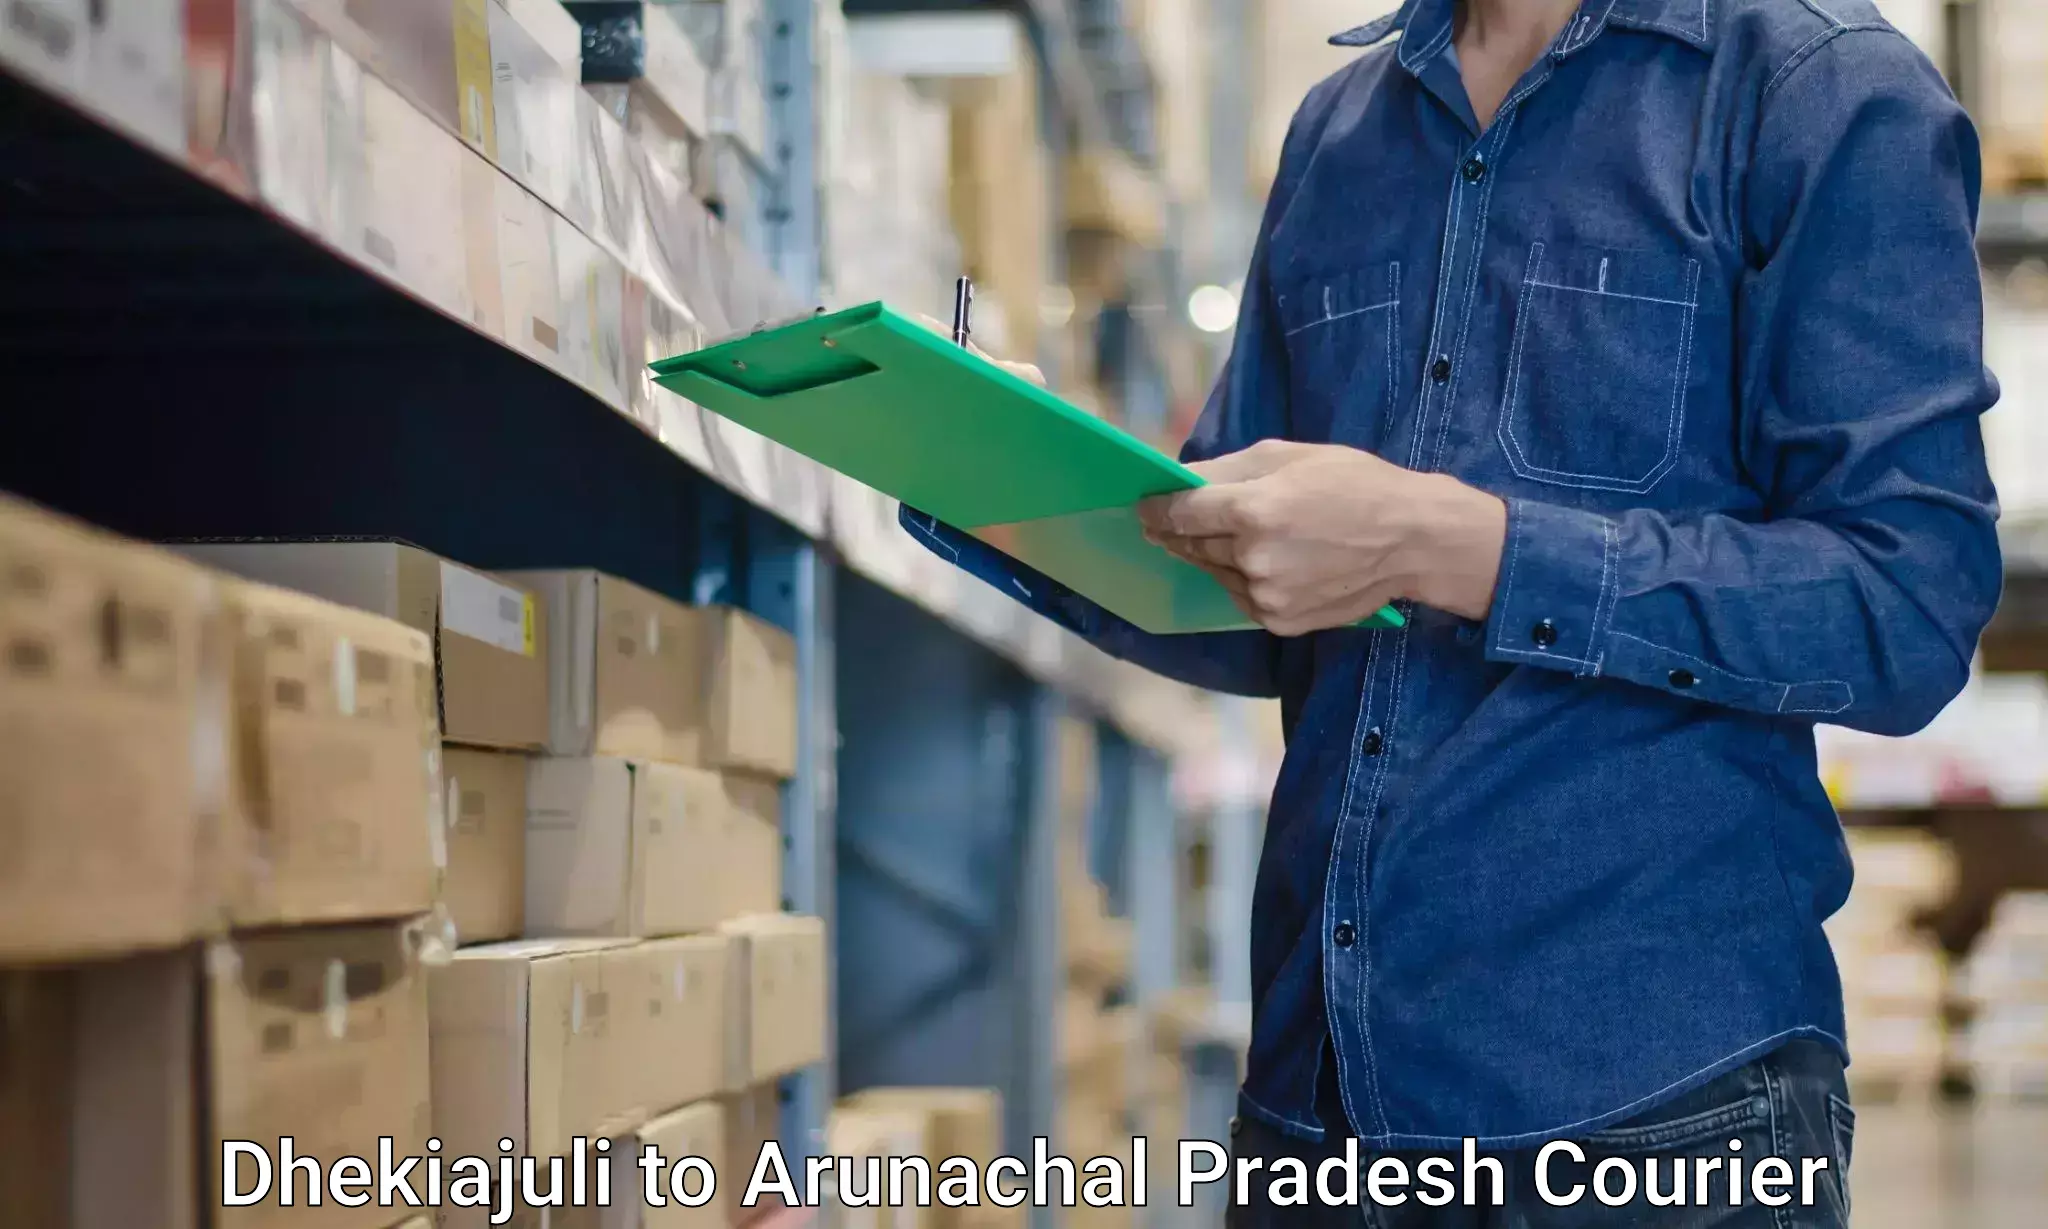 Moving and handling services Dhekiajuli to Arunachal Pradesh